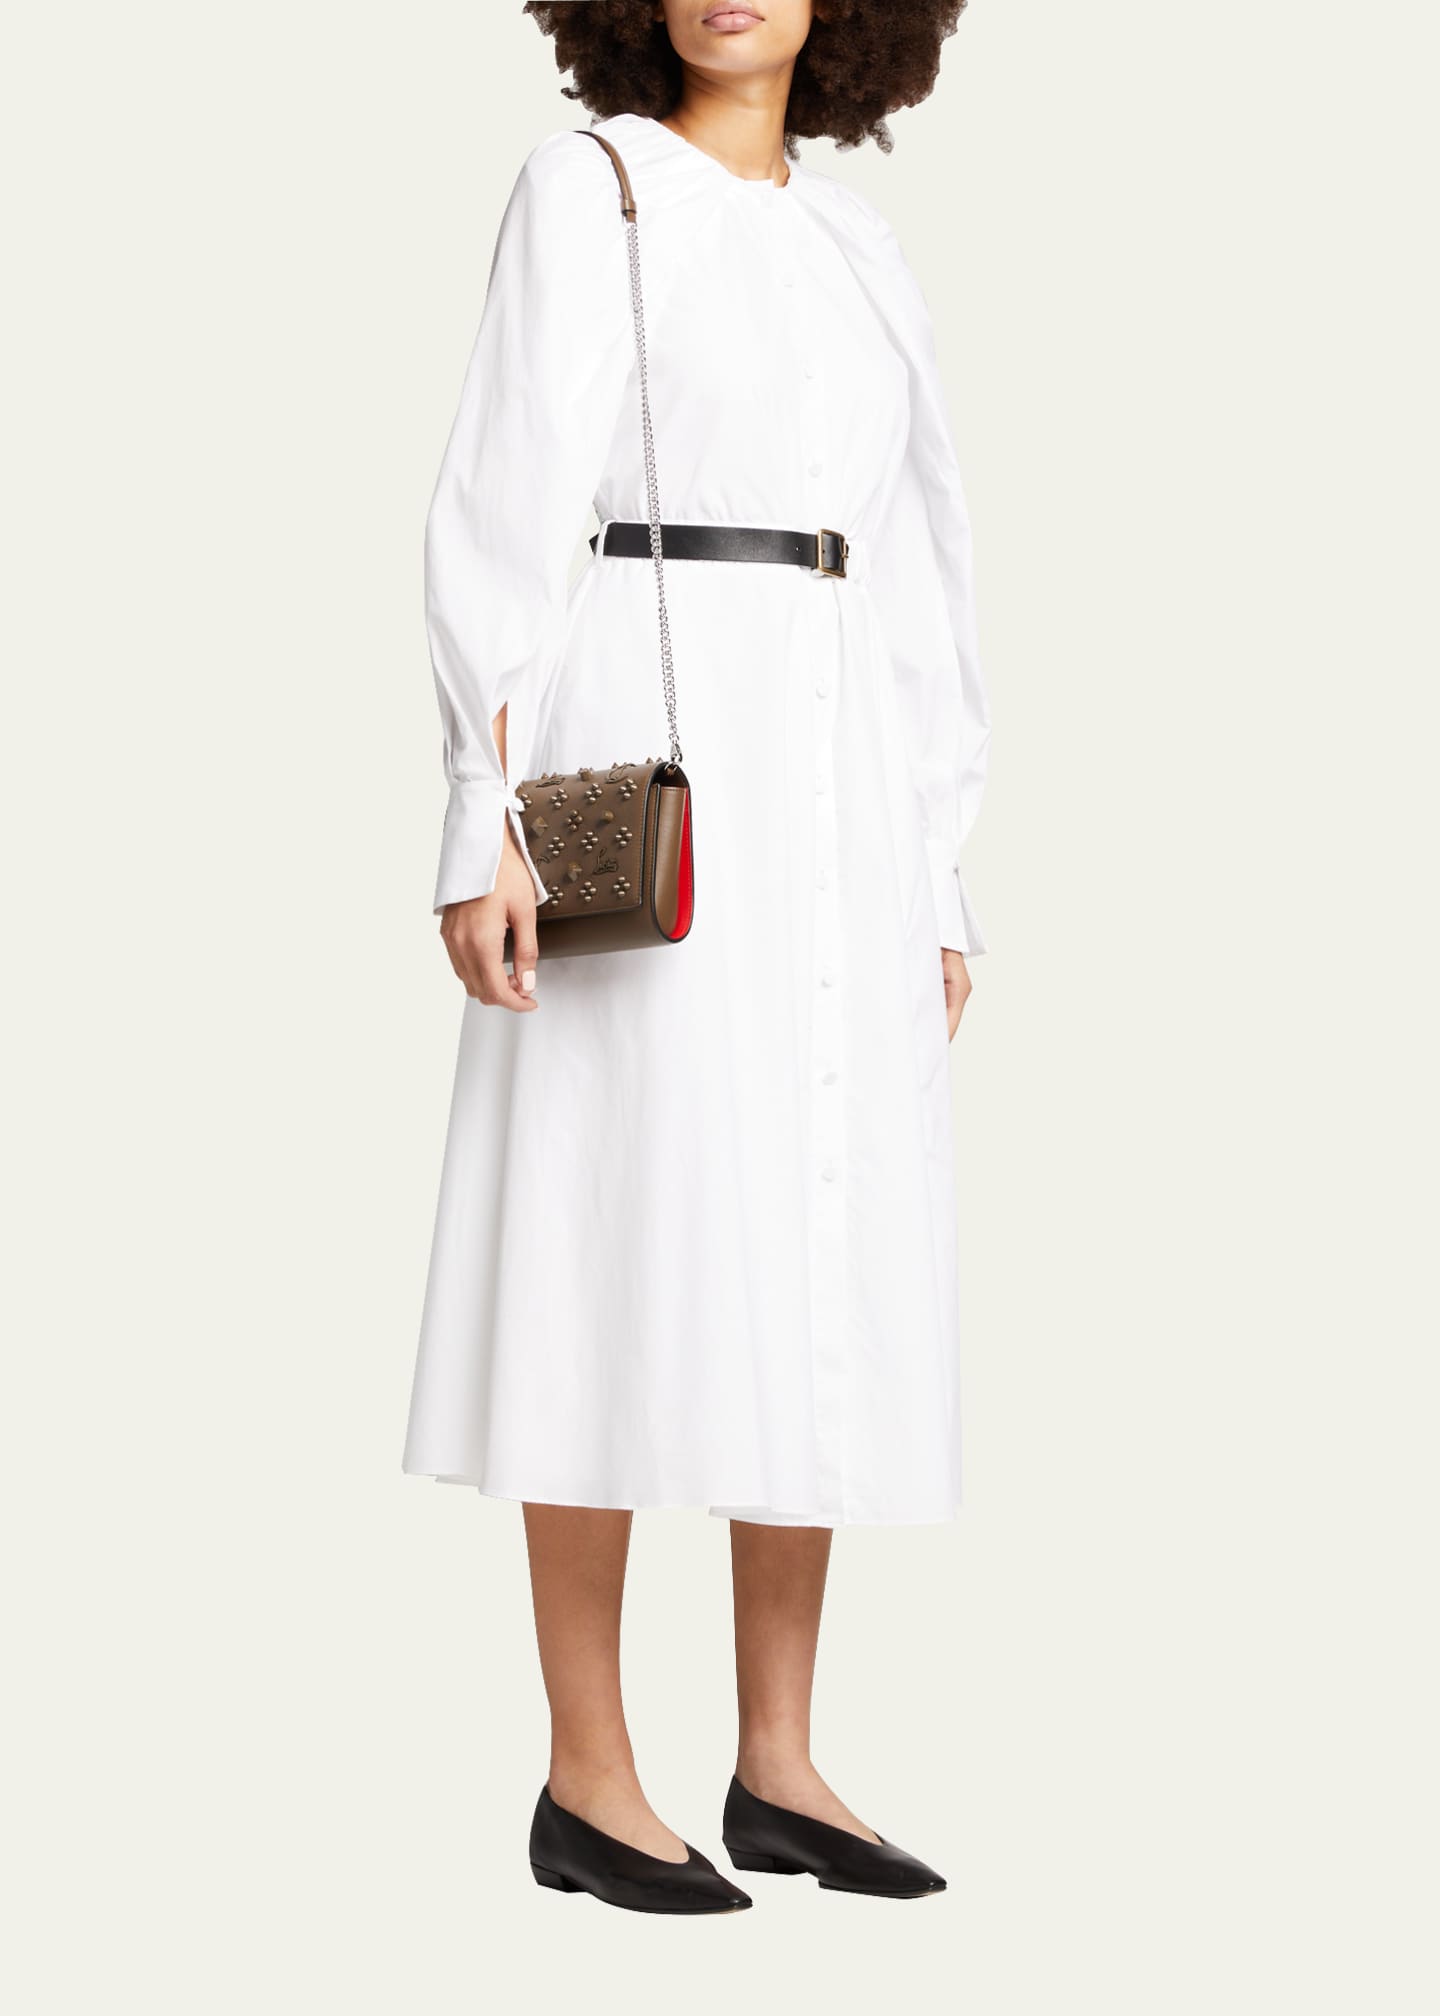 Paloma Embellished Leather Shoulder Bag in Beige - Christian Louboutin